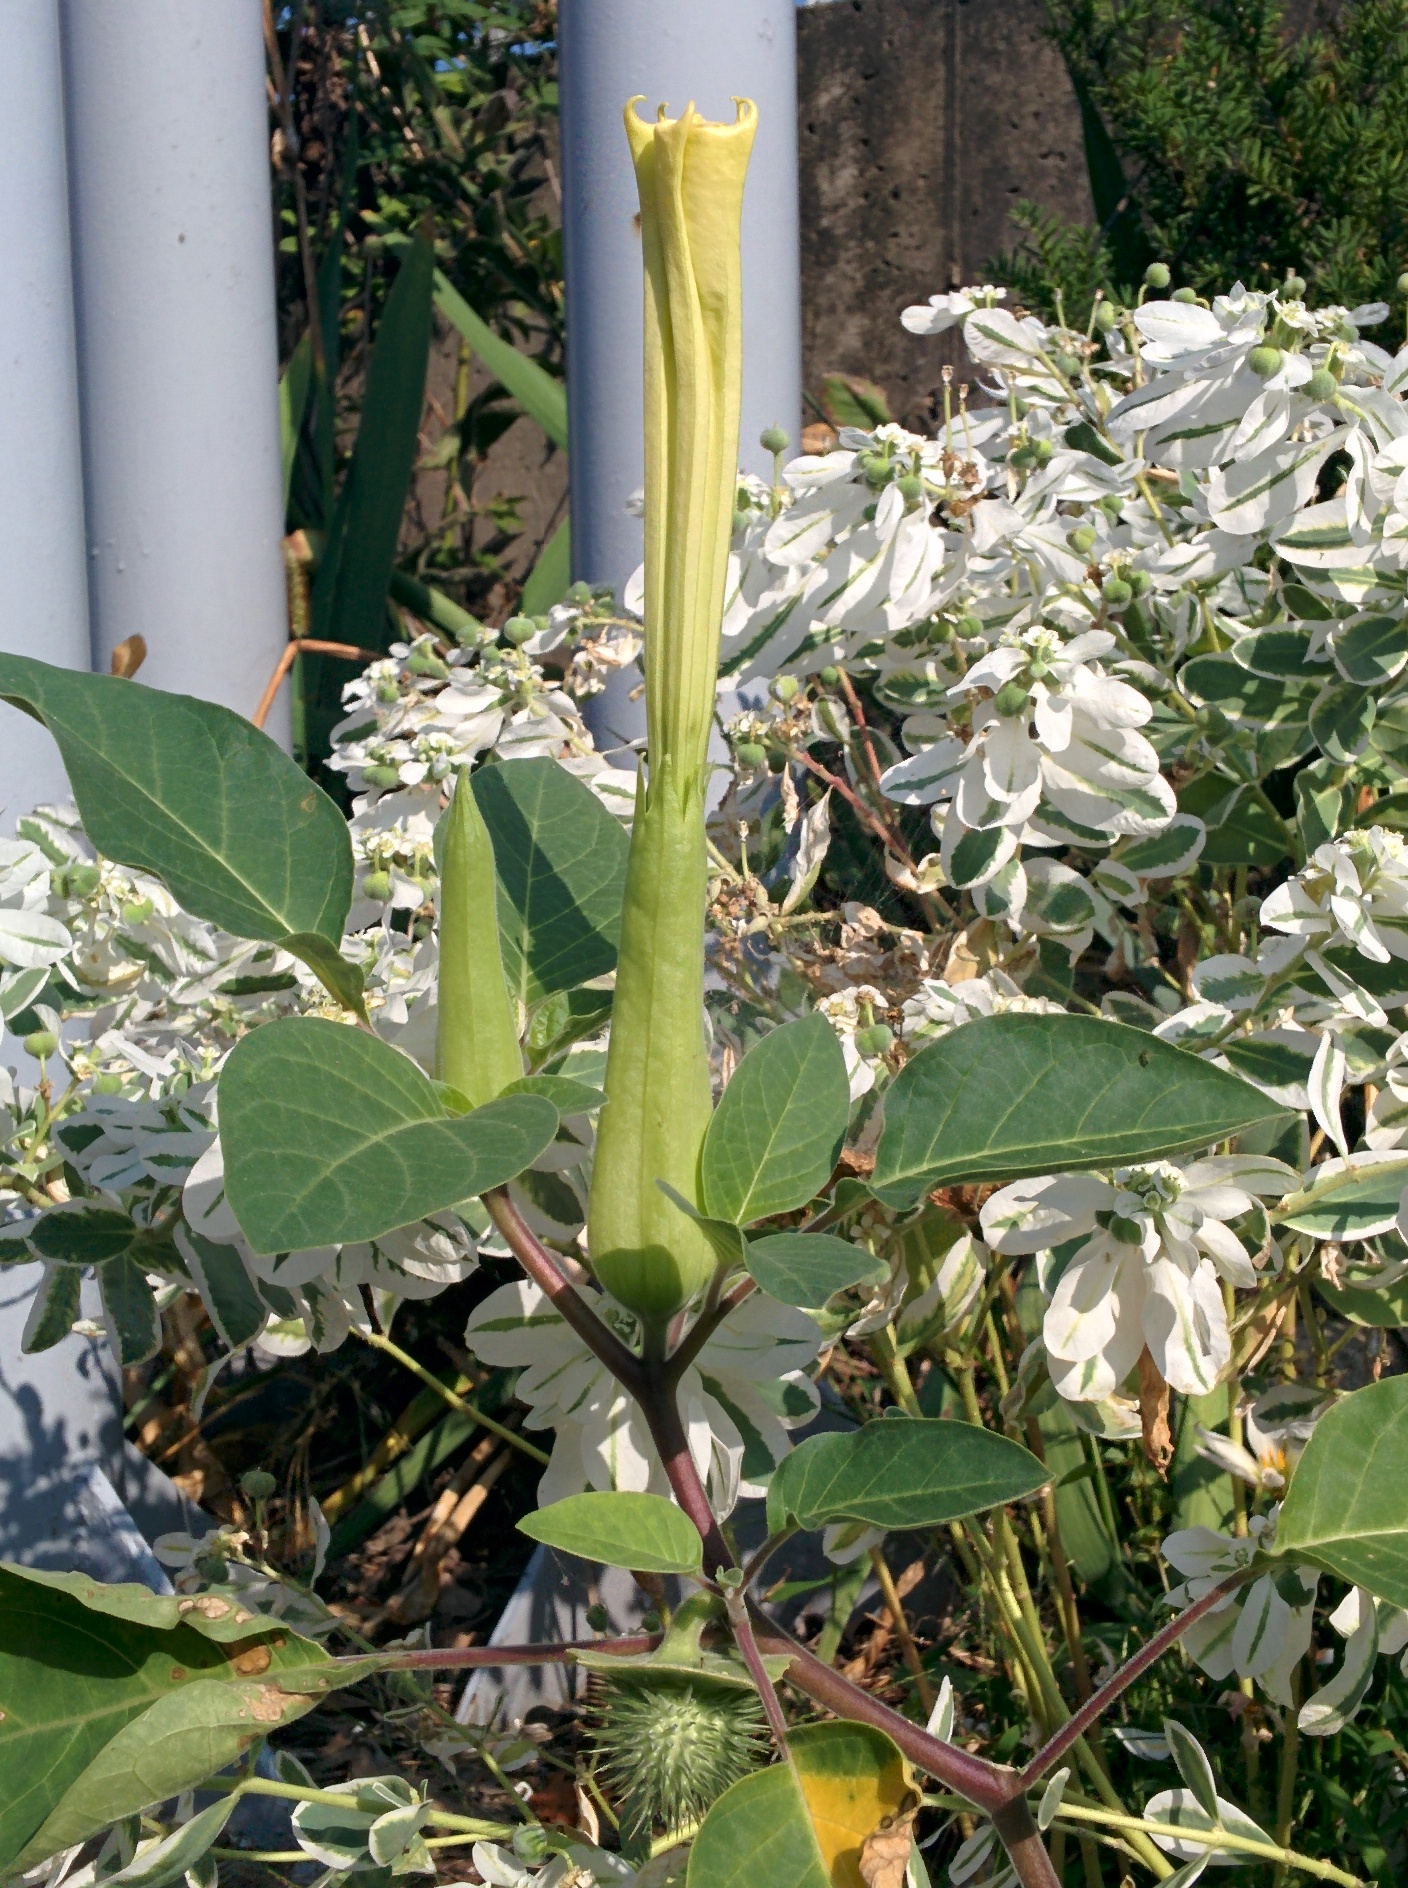 IMG_20150927_092058.jpg 천사의나팔 꽃을 닮은 흰색꽃이 피는 미국흰독말풀(털독말풀) 열매